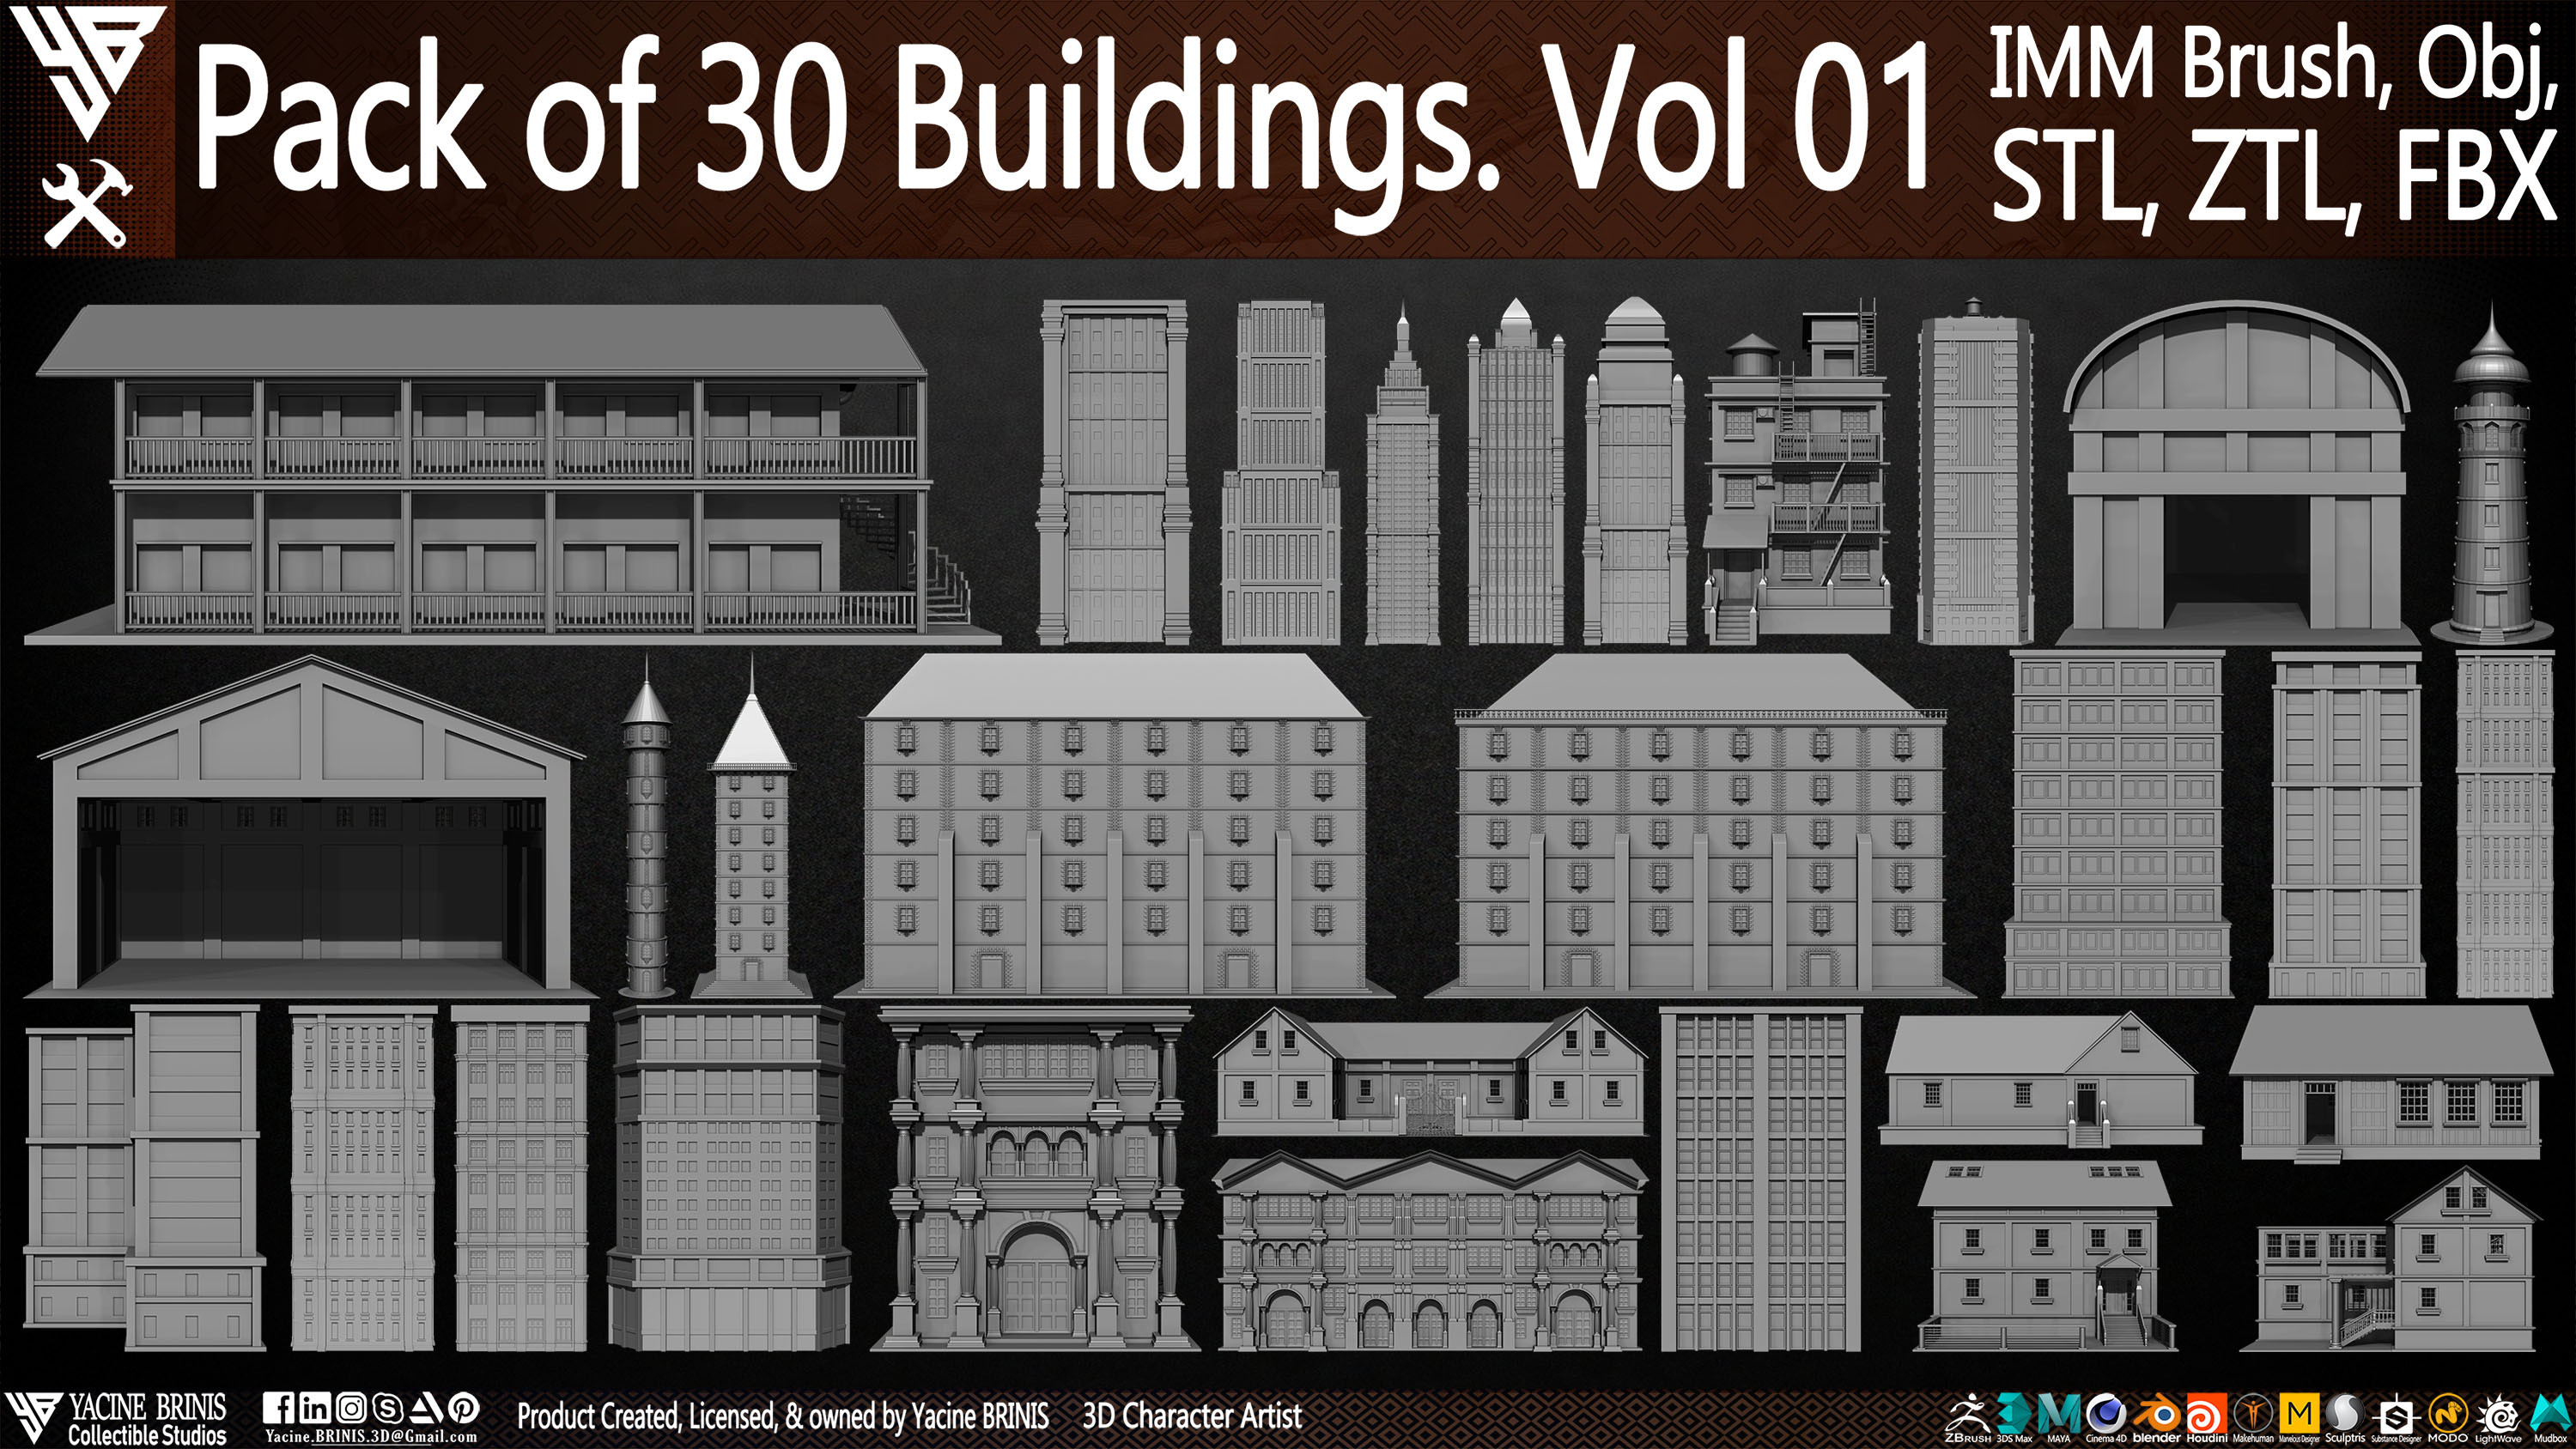 Pack of 30 Buildings Vol 01 Sculpted by Yacine BRINIS Set 002